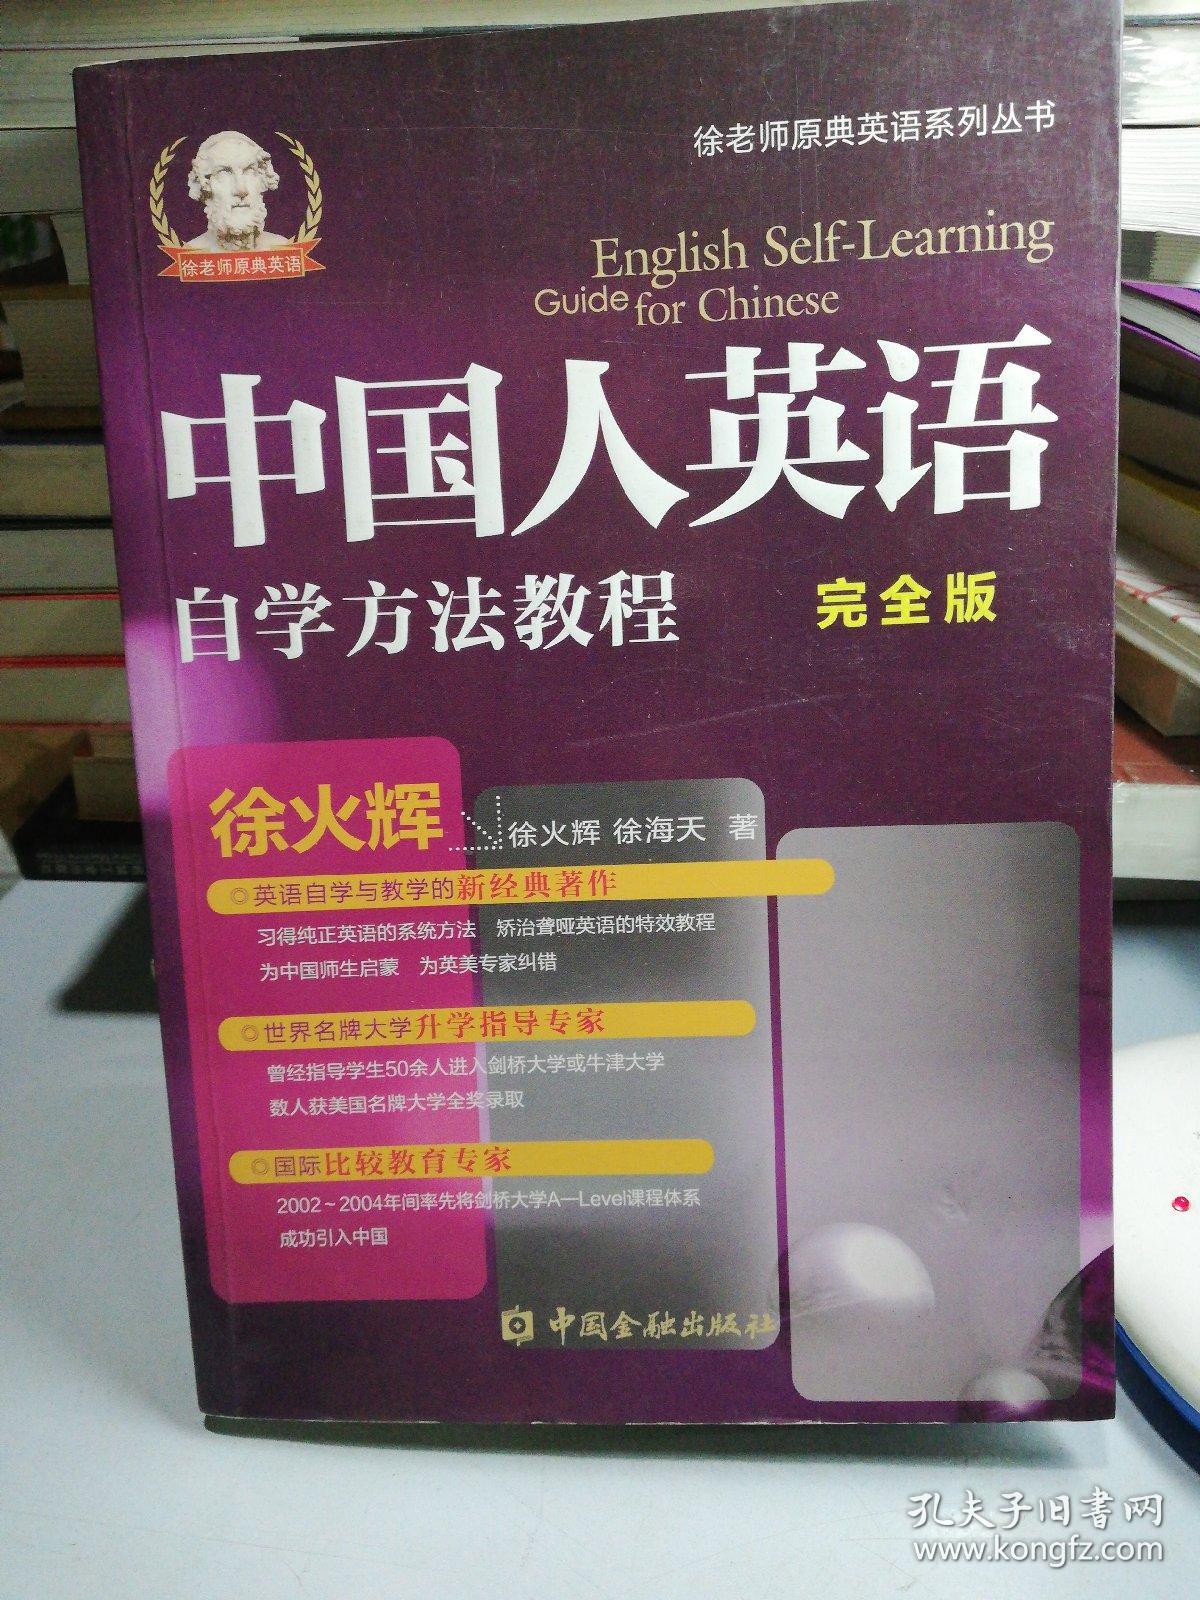 中国人英语自学方法教程:english self-learning guide for chinese